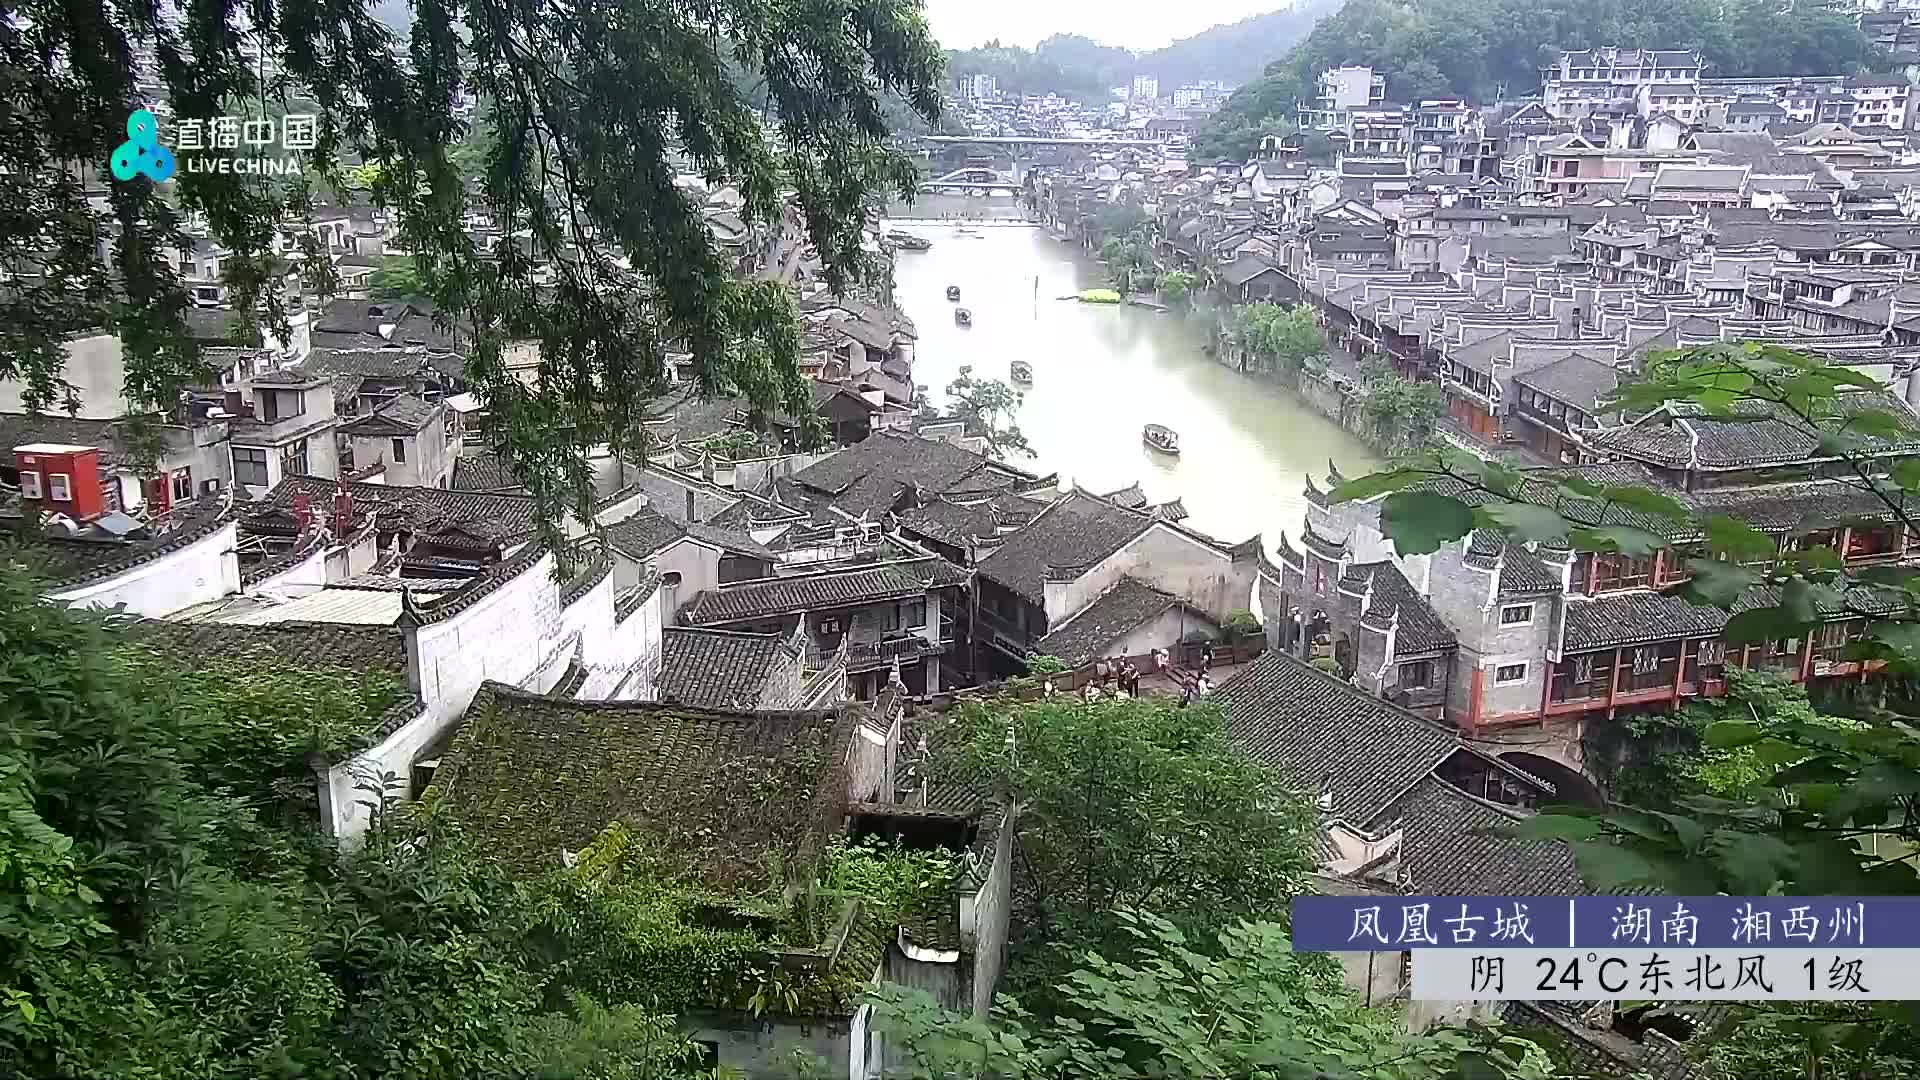 Fenghuang Di. 08:48